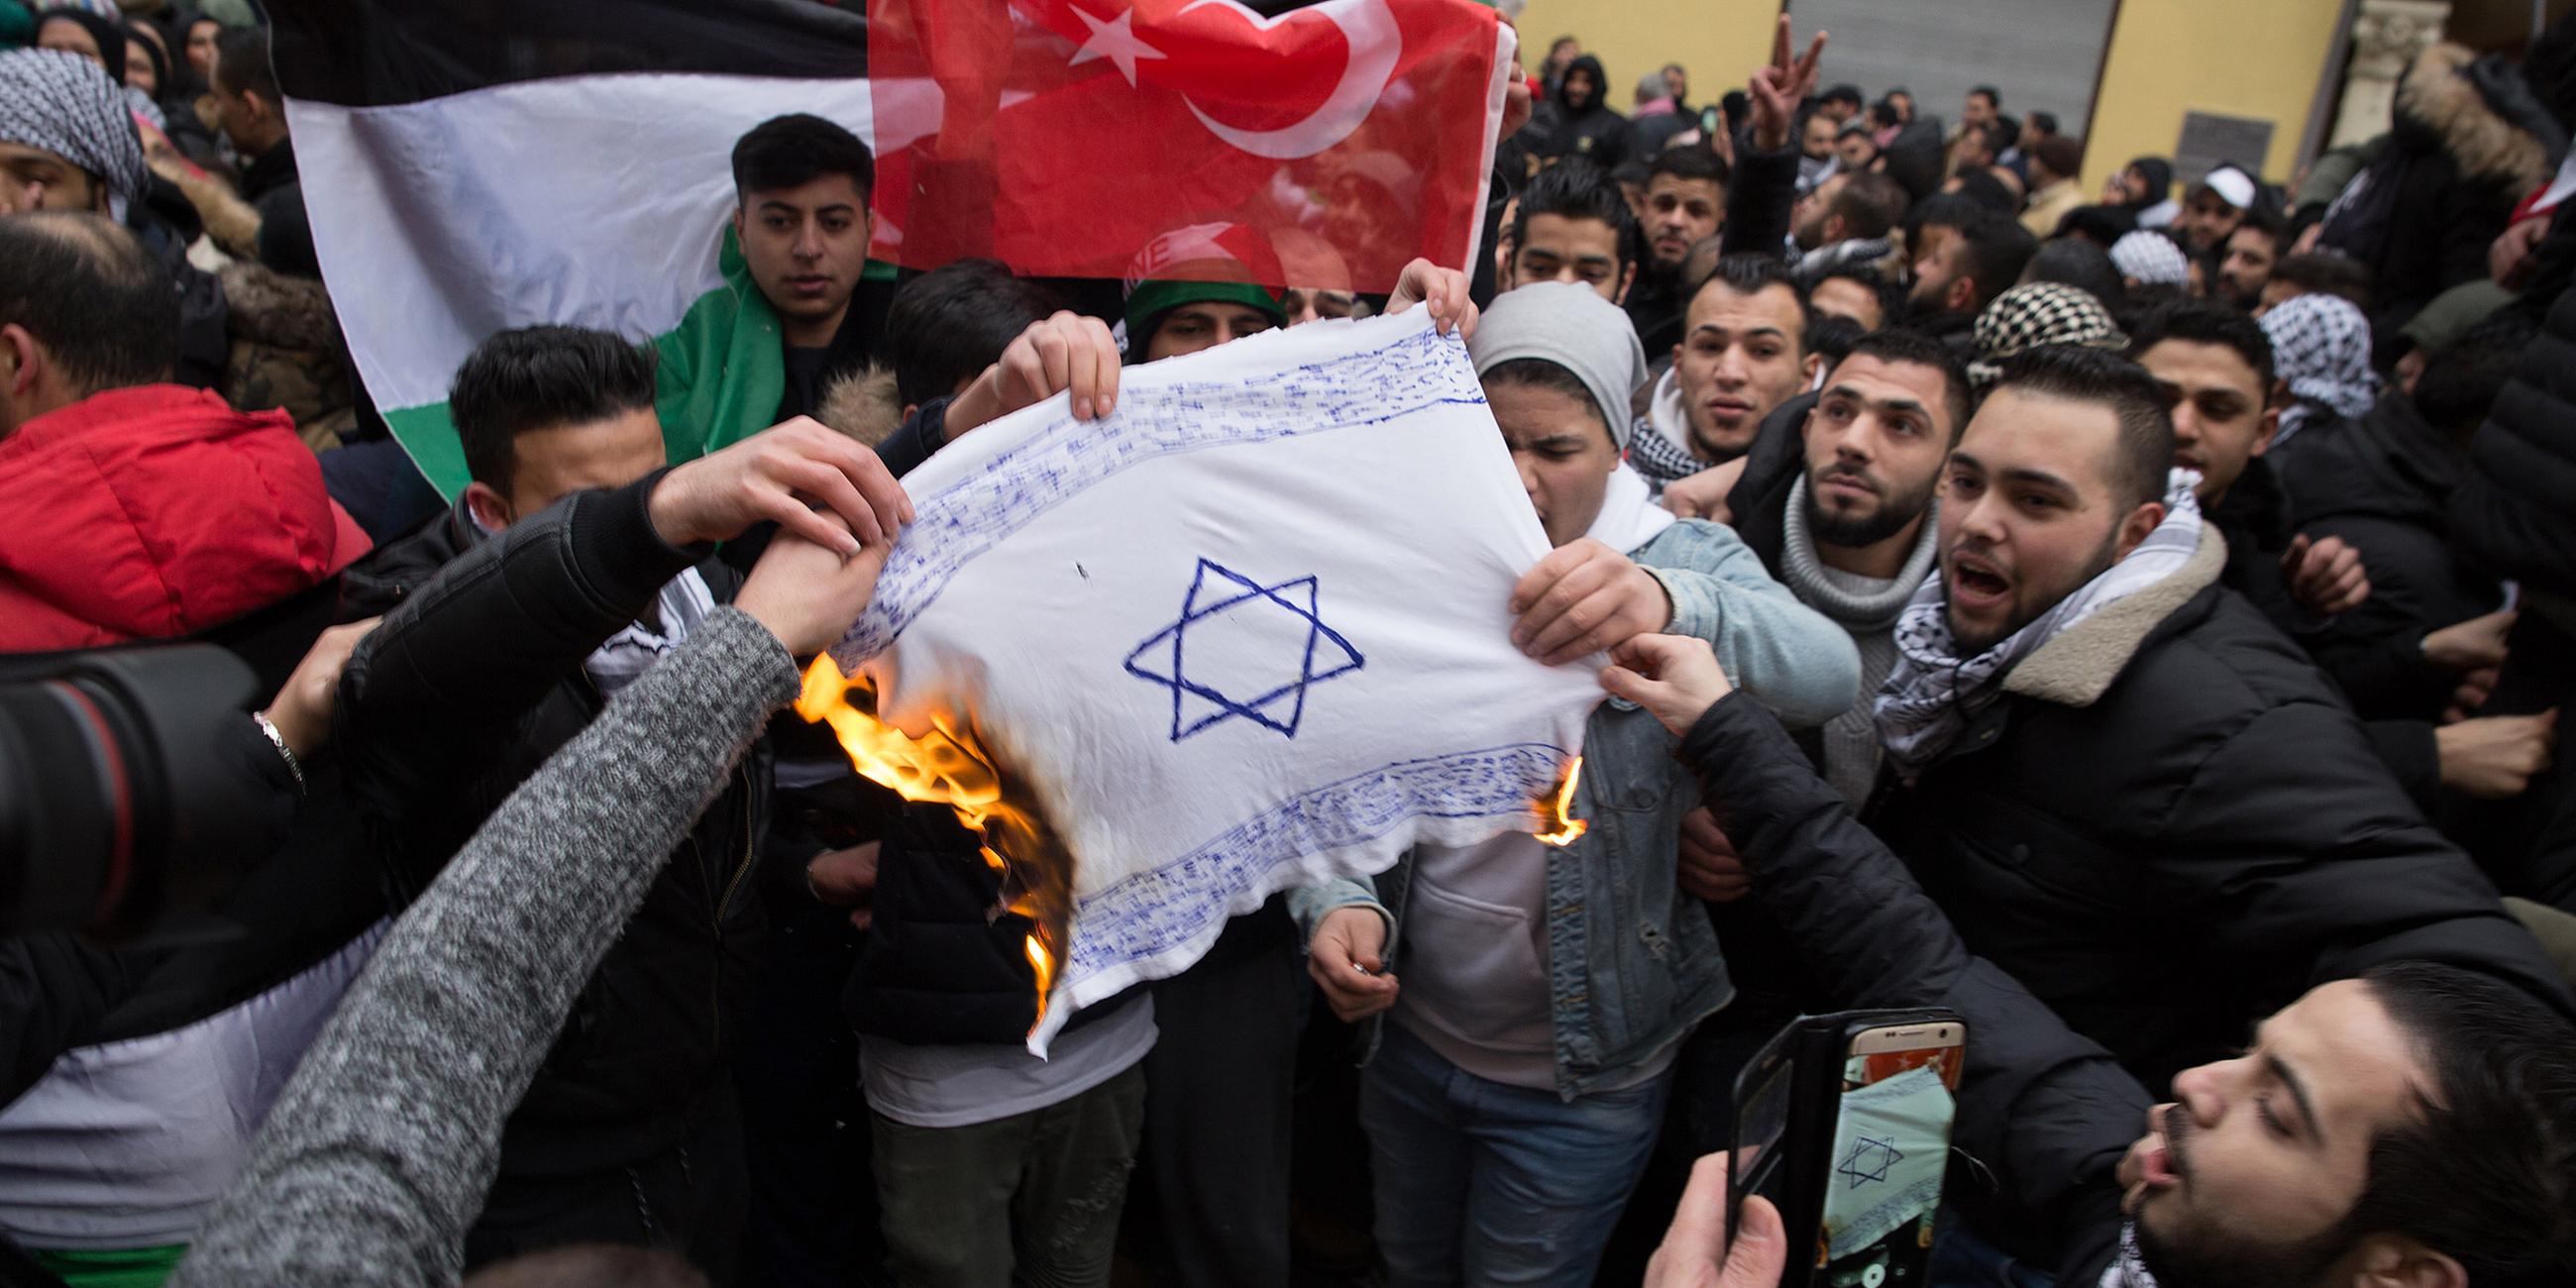 Archiv: Demonstranten verbrennen eine selbstgemalte Israel-Flagge in Berlin.